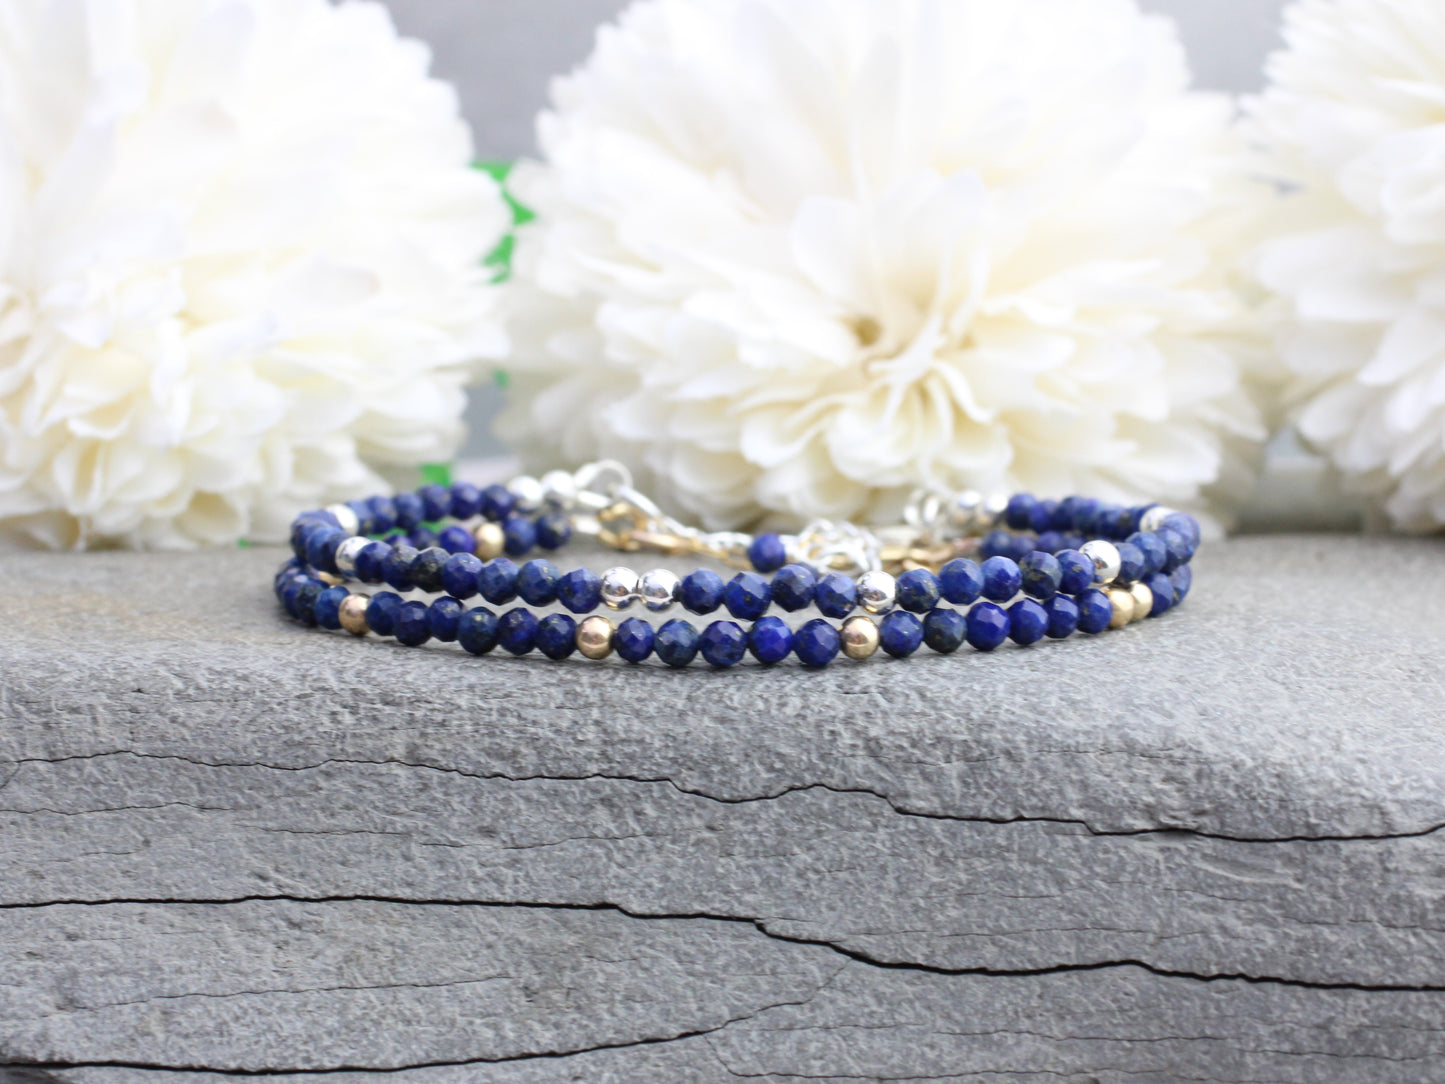 Lapis lazuli bracelet in sterling silver or gold filled metal. September birthstone bracelet.